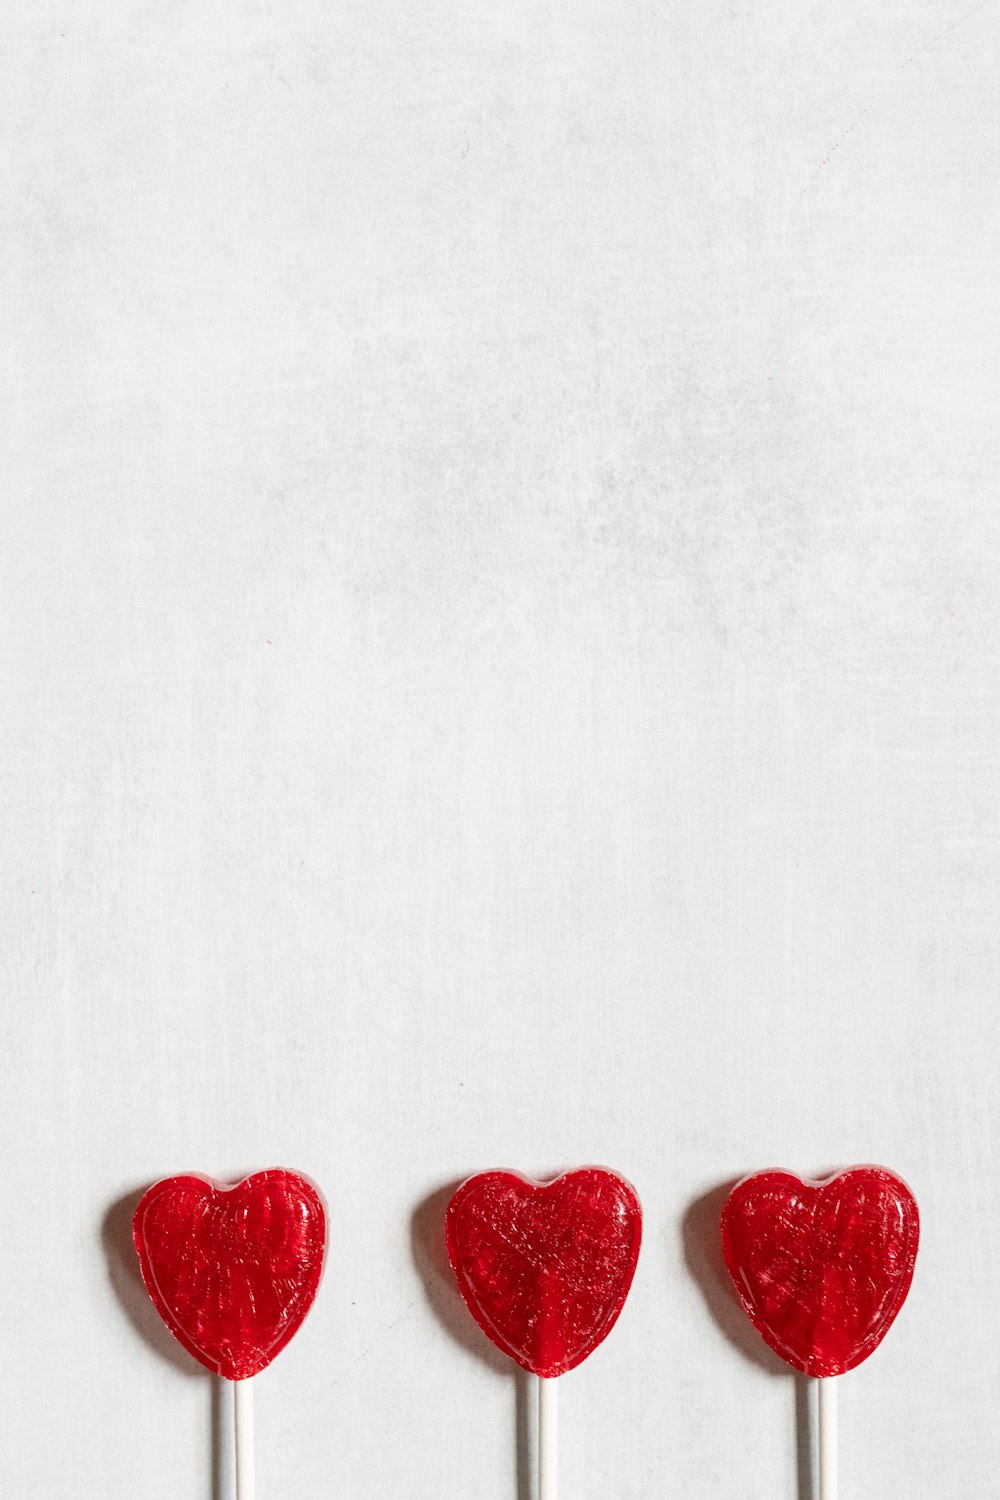 three lollipops shaped like hearts on a stick